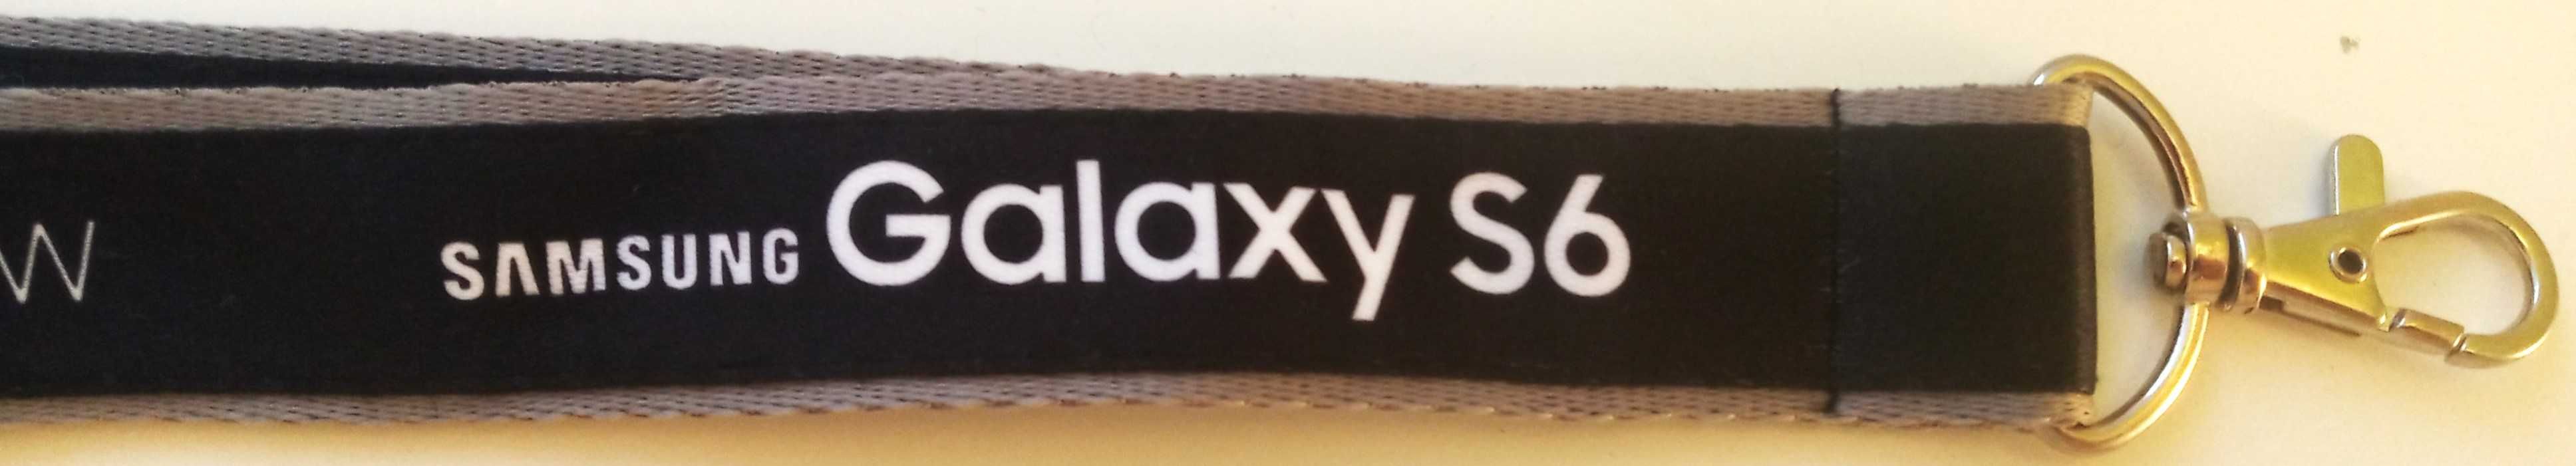 Smycz z karabińczykiem czarno-szara Samsung klucze identyfikator- 3szt